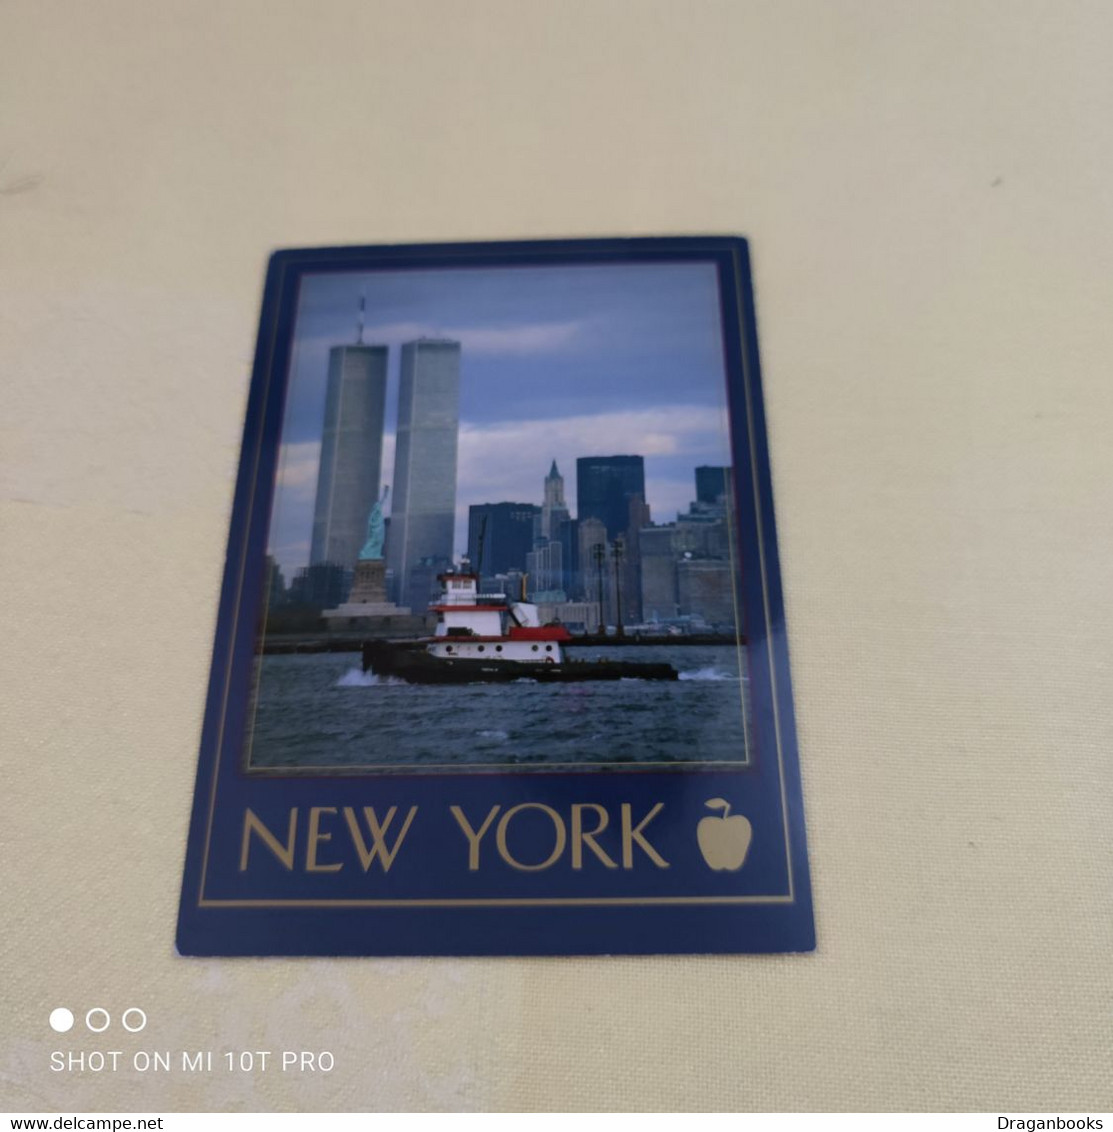 News York City - World Trade Center